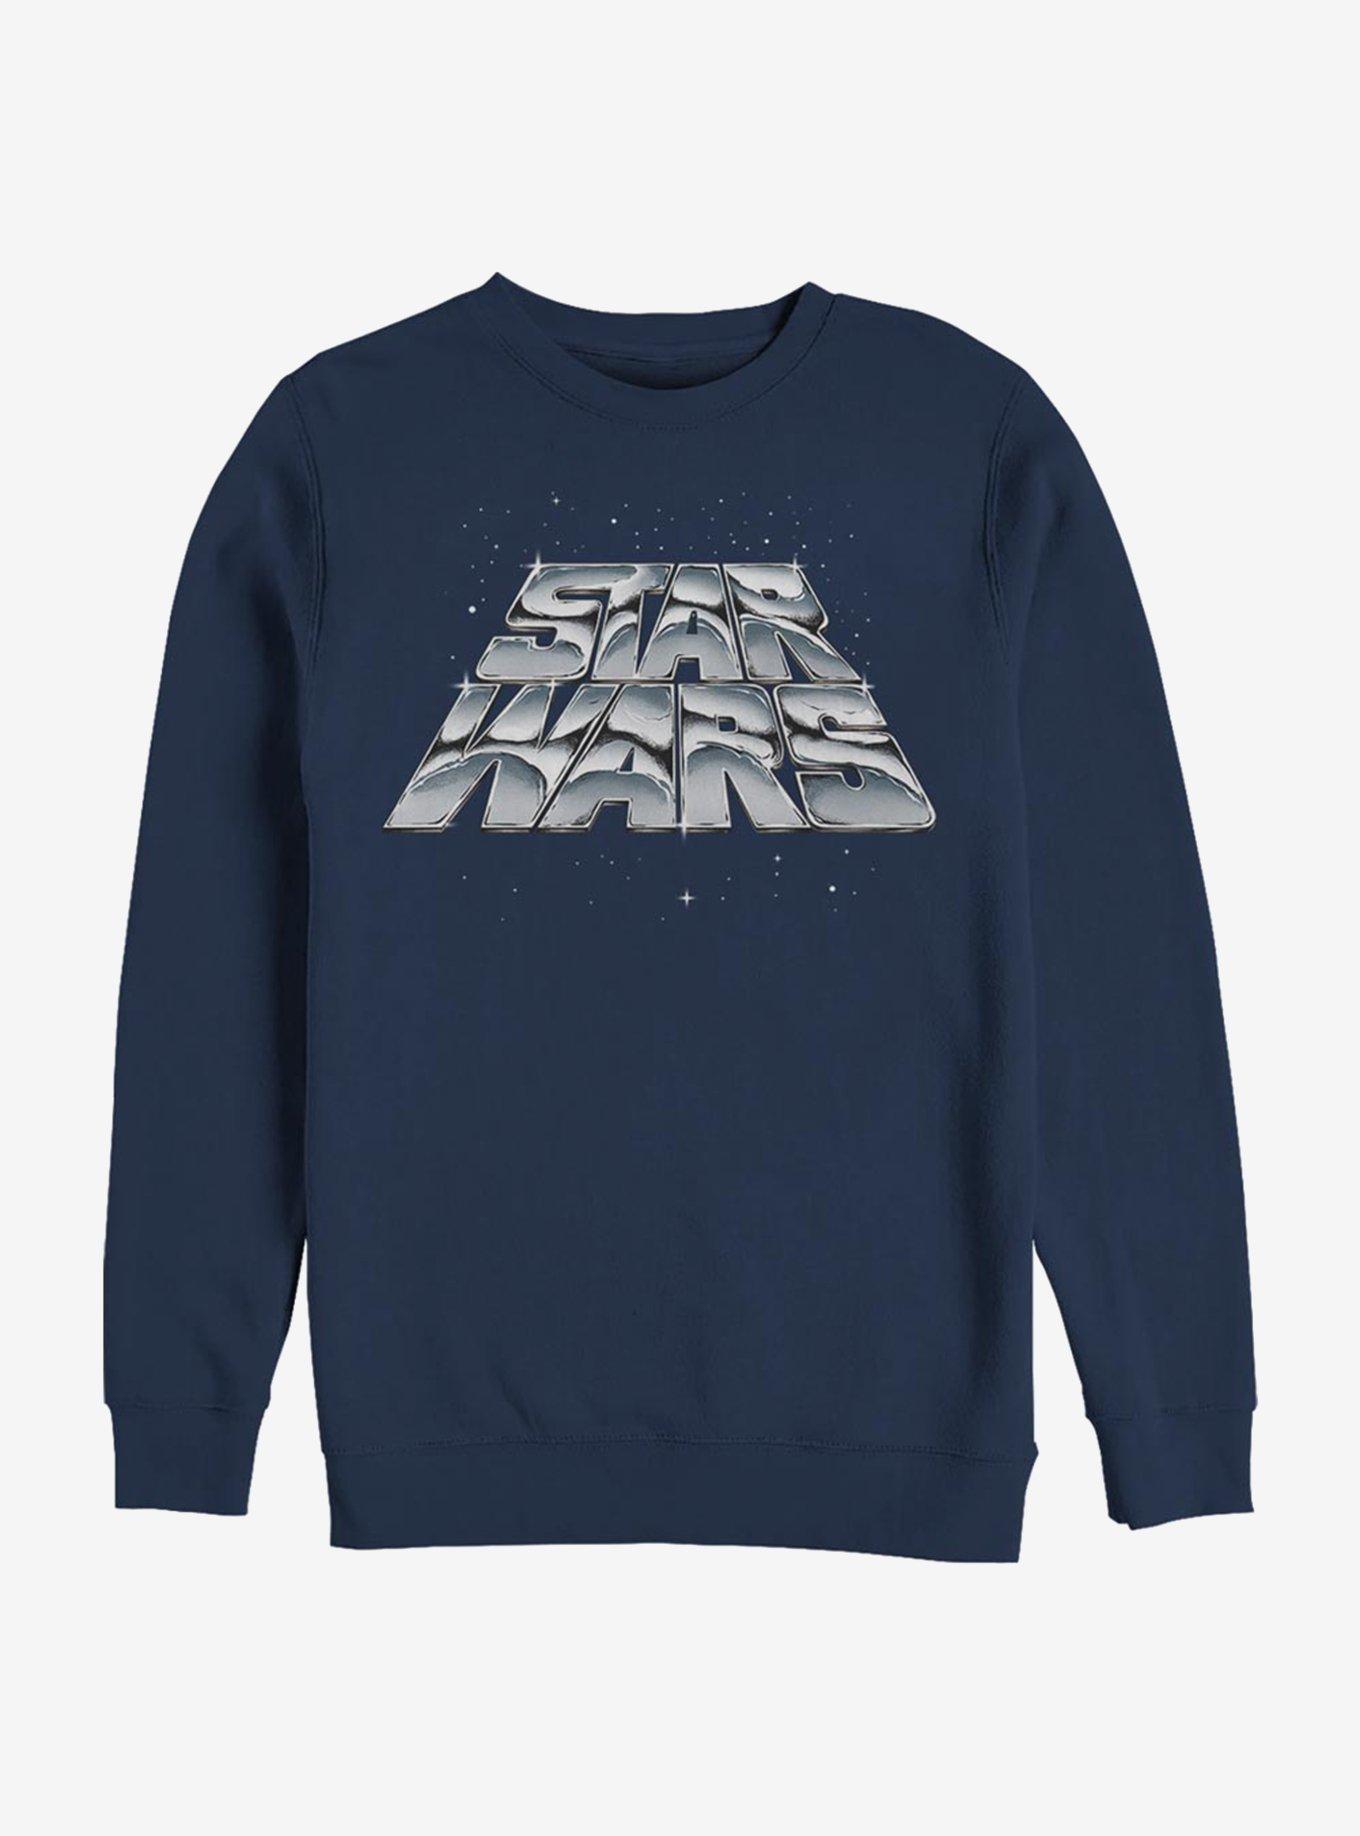 Star Wars Chrome Slant Logo Sweatshirt, NAVY, hi-res